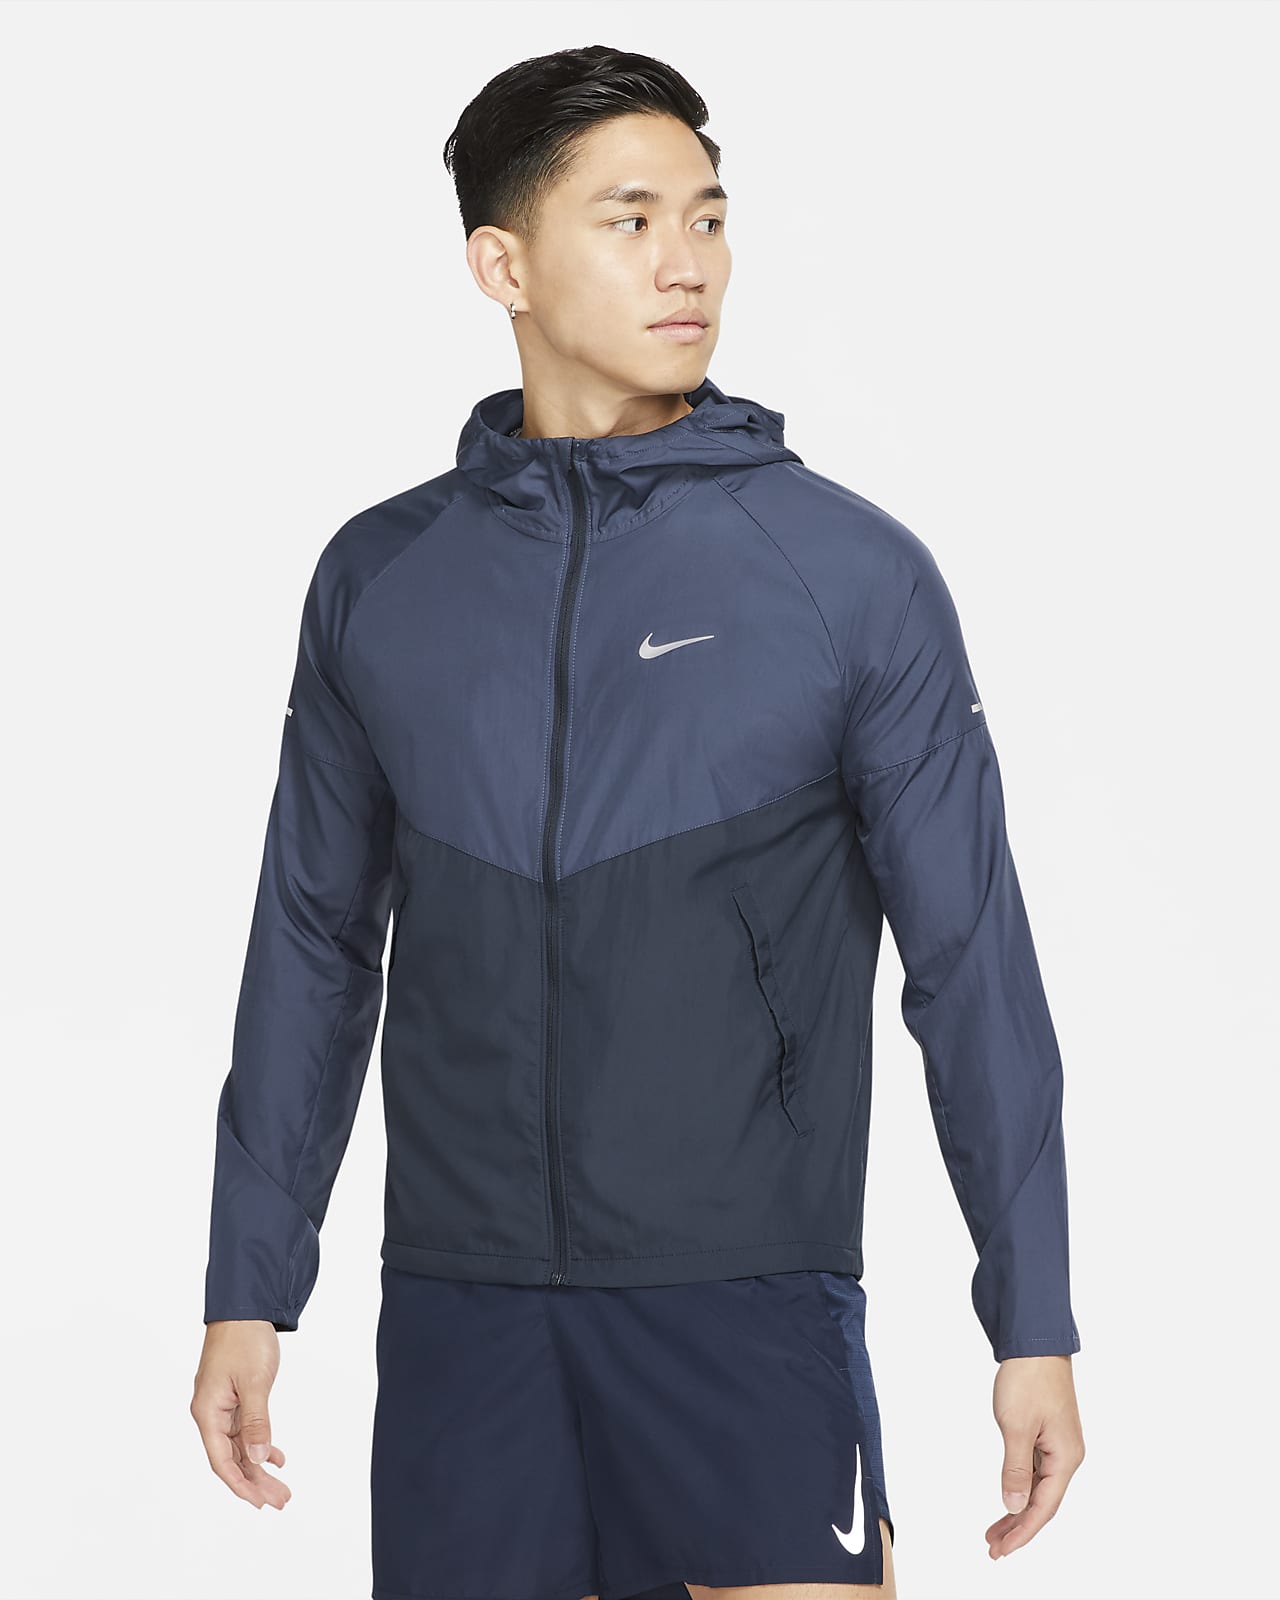 เสื้อแจ็คเก็ตวิ่งผู้ชาย Nike Repel Miler